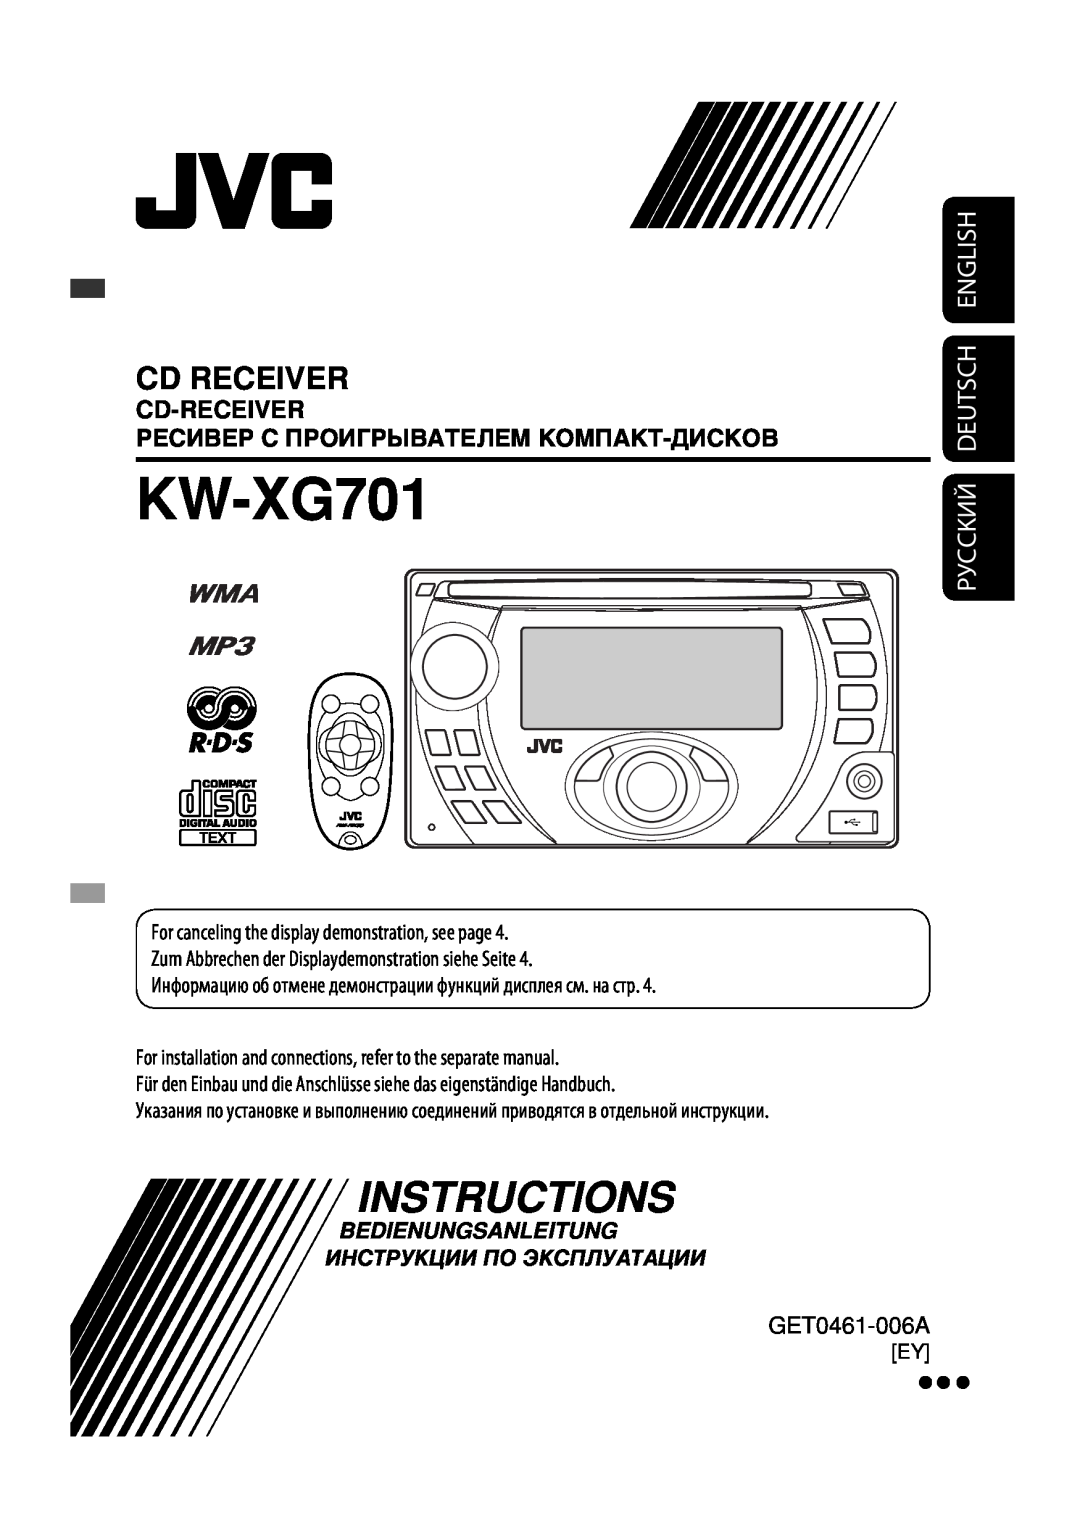 JVC KW-XG701 manual Руcckий Deutsch English, Cd-Receiver, Ресивер С Проигрывателем Компакт-Дисков, Instructions 